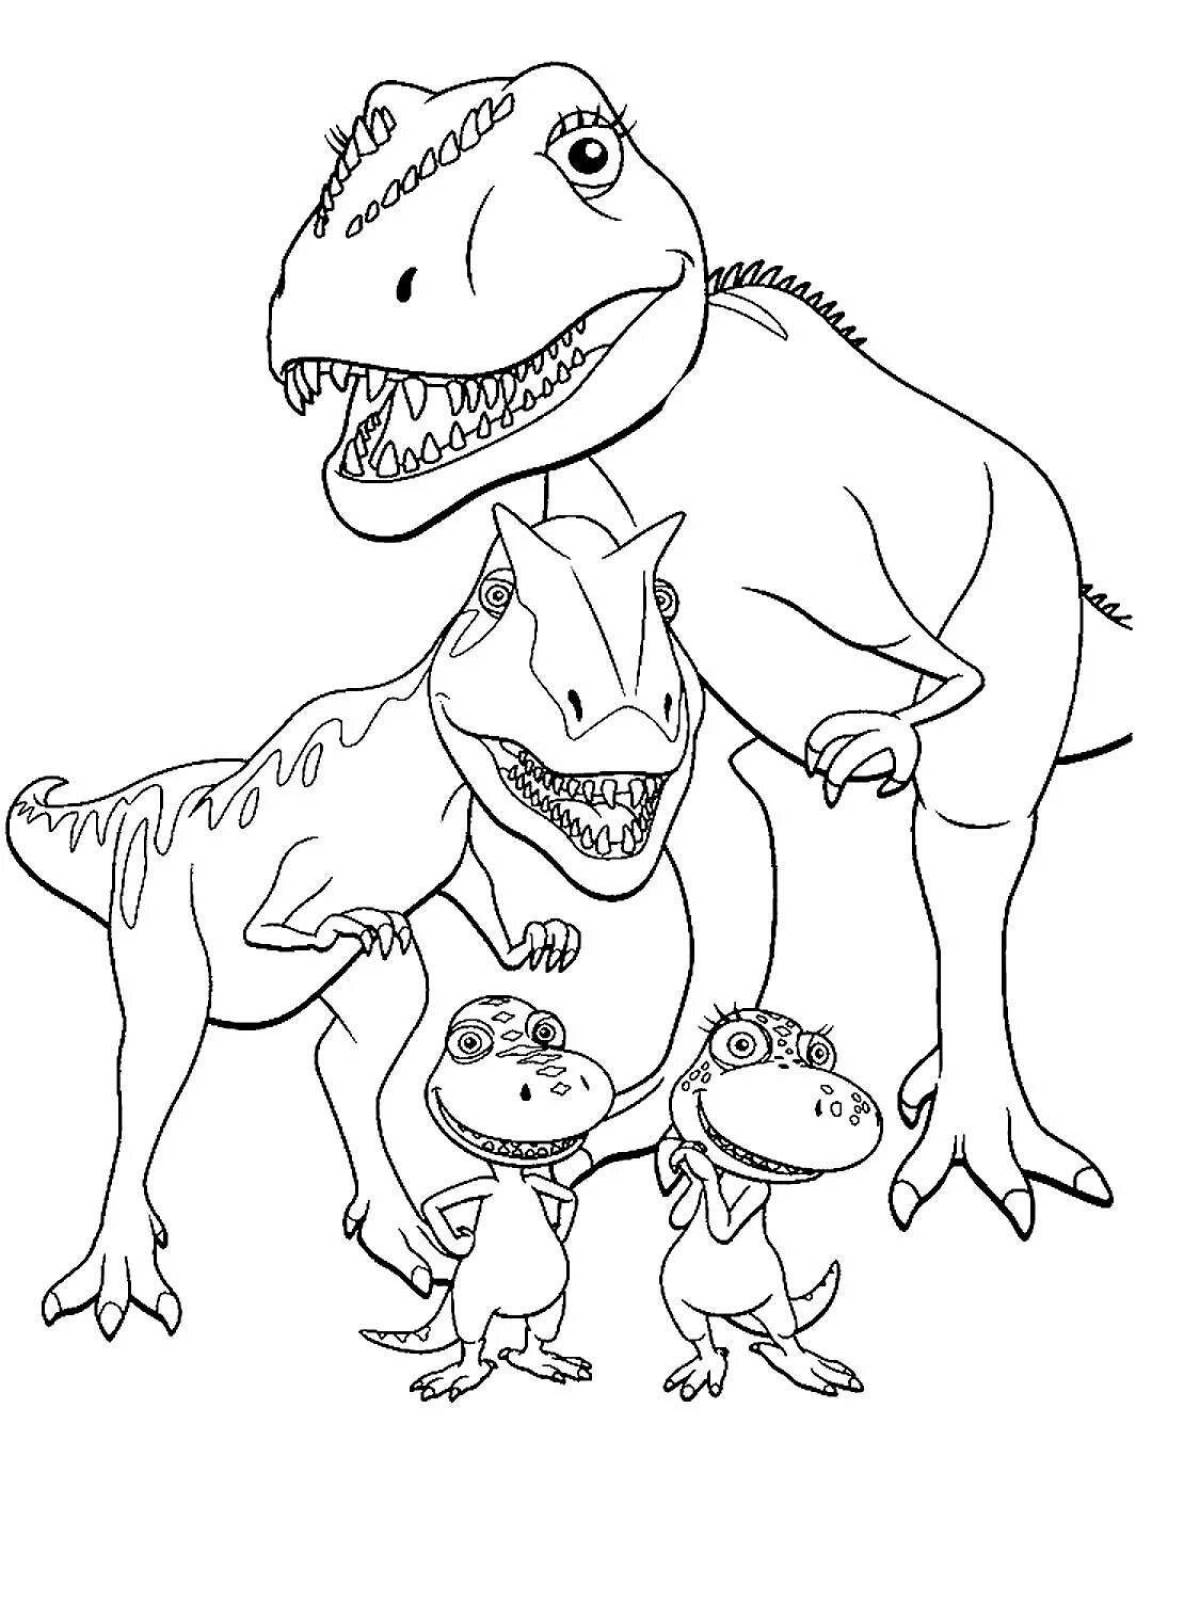 Изысканная раскраска тираннозавра для детей